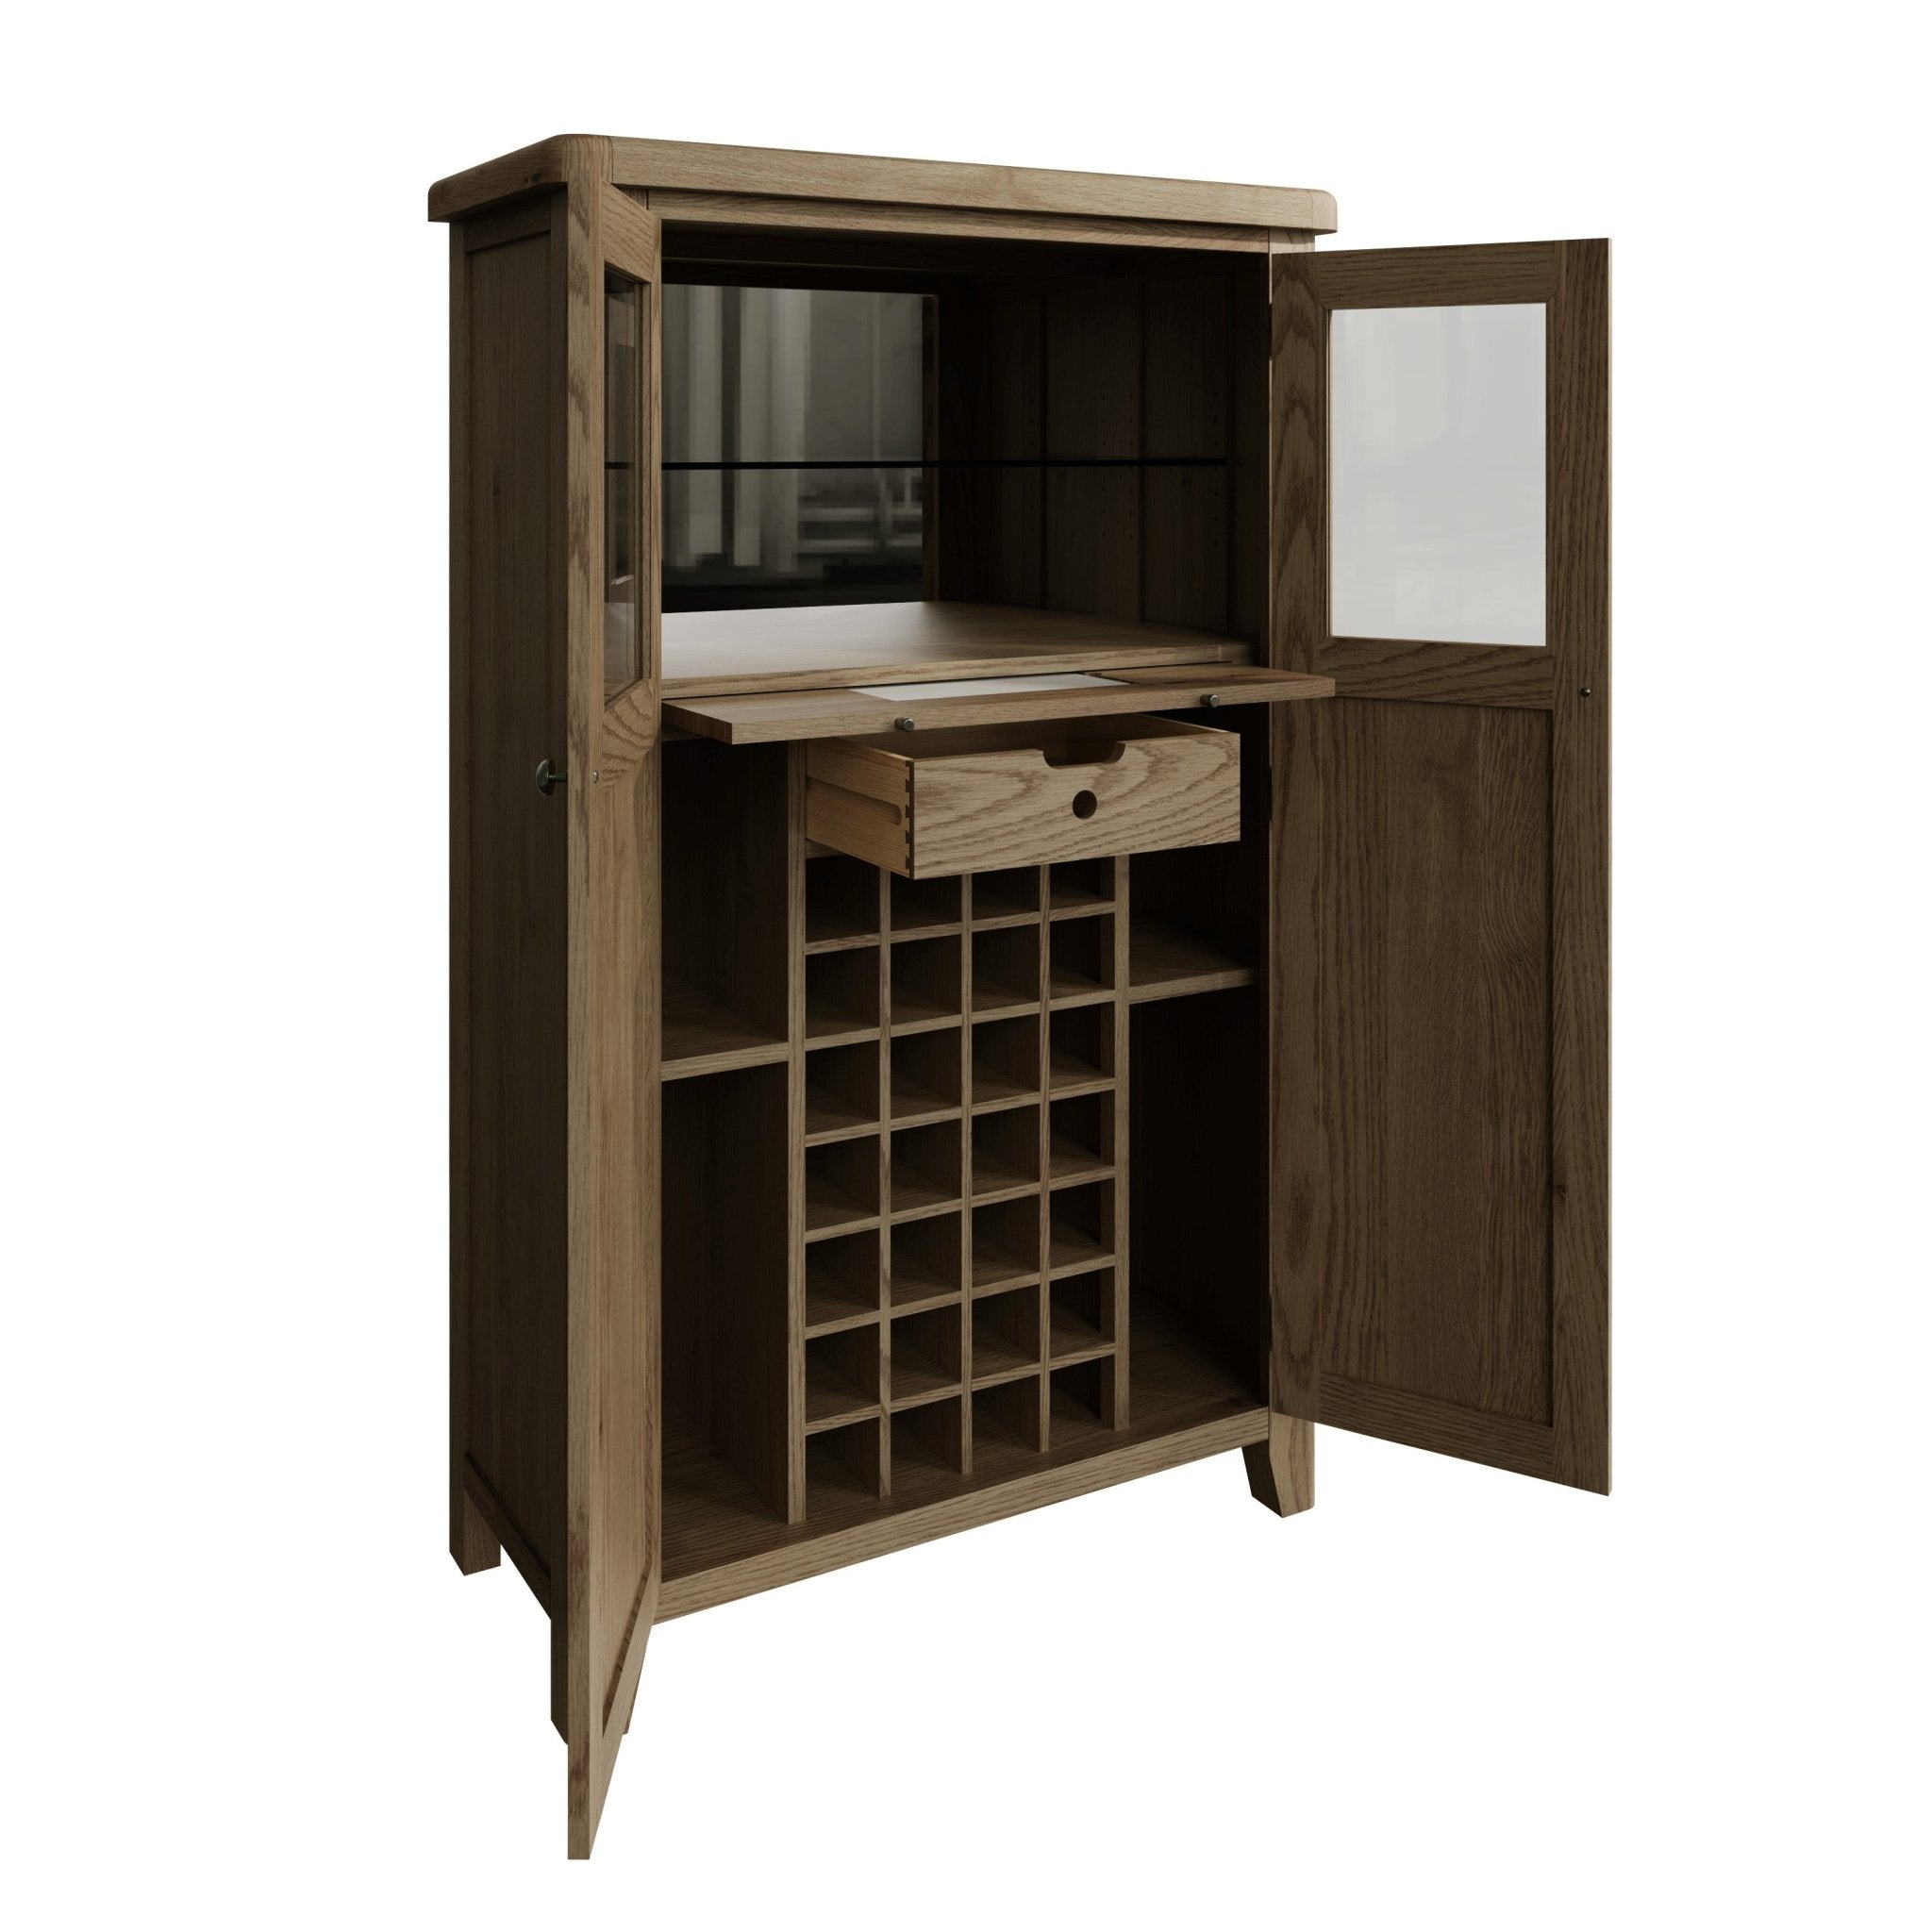 Rusper Oak Drinks Cabinet Cupboard - Duck Barn Interiors